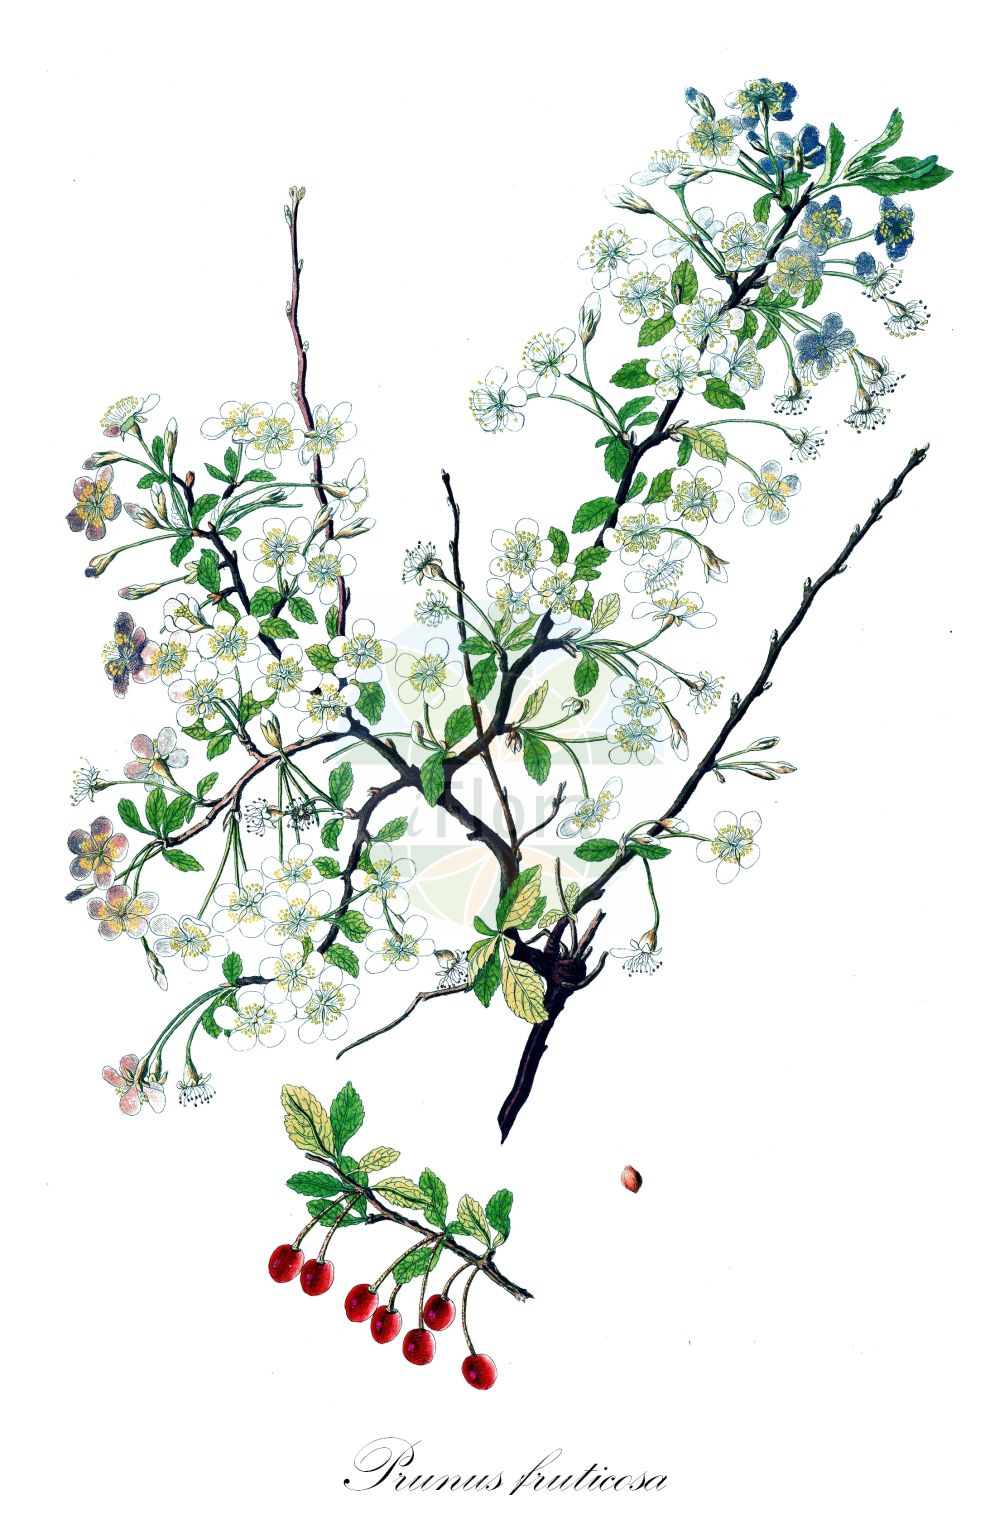 Historische Abbildung von Prunus fruticosa (Zwerg-Kirsche - Dwarf Cherry). Das Bild zeigt Blatt, Bluete, Frucht und Same. ---- Historical Drawing of Prunus fruticosa (Zwerg-Kirsche - Dwarf Cherry). The image is showing leaf, flower, fruit and seed.(Prunus fruticosa,Zwerg-Kirsche,Dwarf Cherry,Cerasus fruticosa,Prunus chamaecerasus,Prunus fruticosa,Zwerg-Kirsche,Steppen-Kirsche,Zwerg-Weichsel,Dwarf Cherry,European Dwarf Cherry,Ground Cherry,Steppe Cherry,Prunus,Kirsche,Plum,Rosaceae,Rosengewächse,Rose family,Blatt,Bluete,Frucht,Same,leaf,flower,fruit,seed)